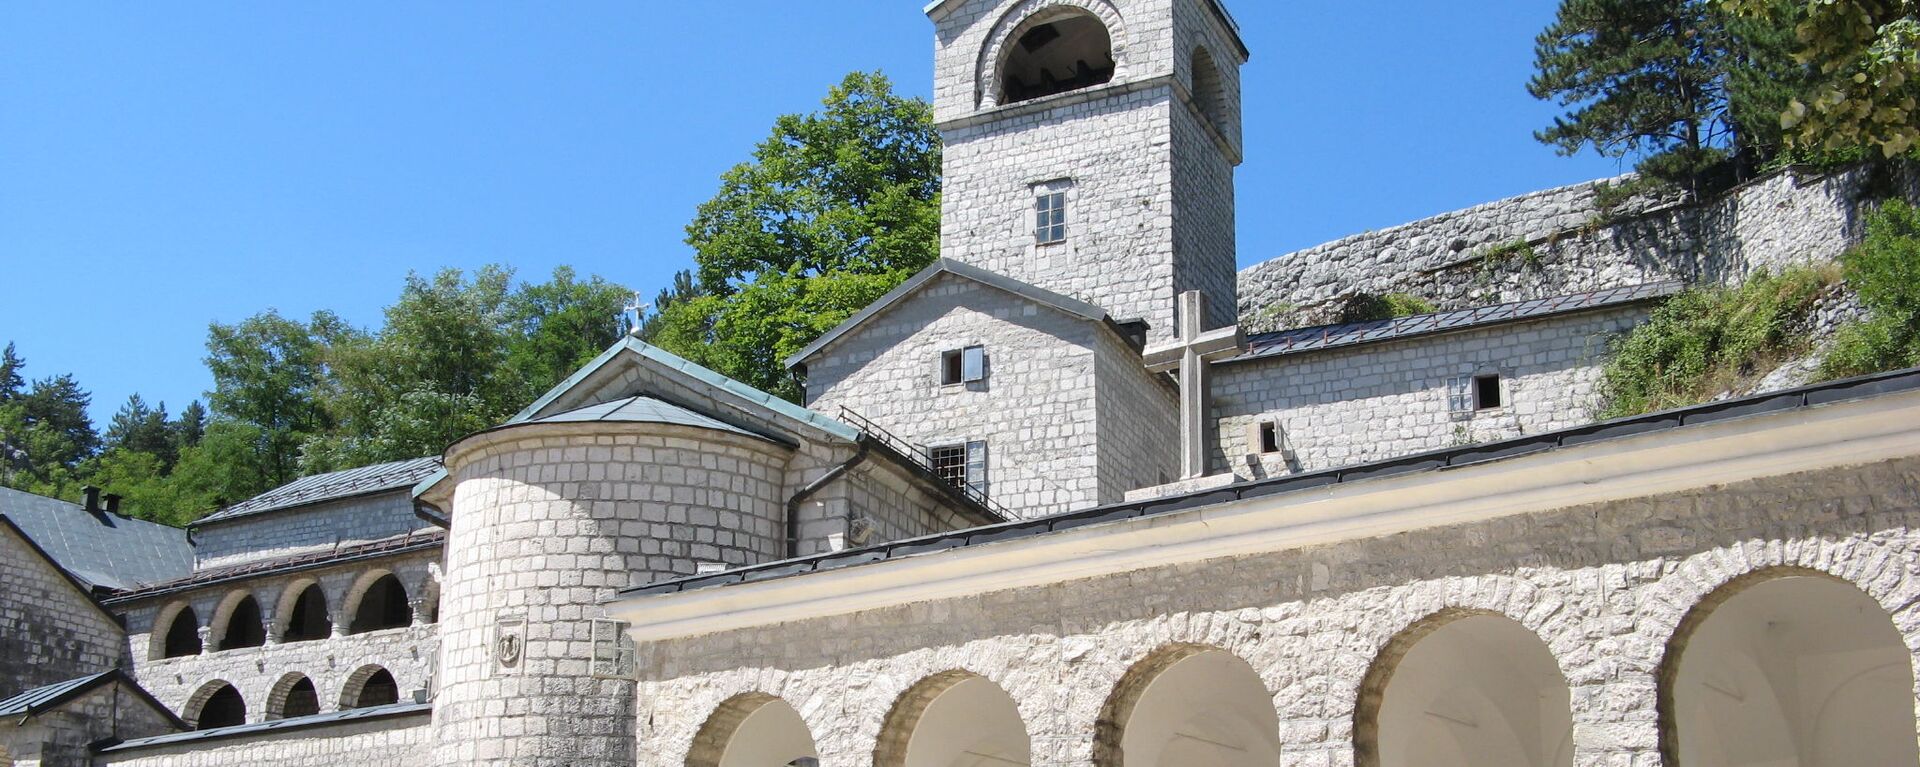 Cetinjski manastir - Sputnik Srbija, 1920, 14.09.2021